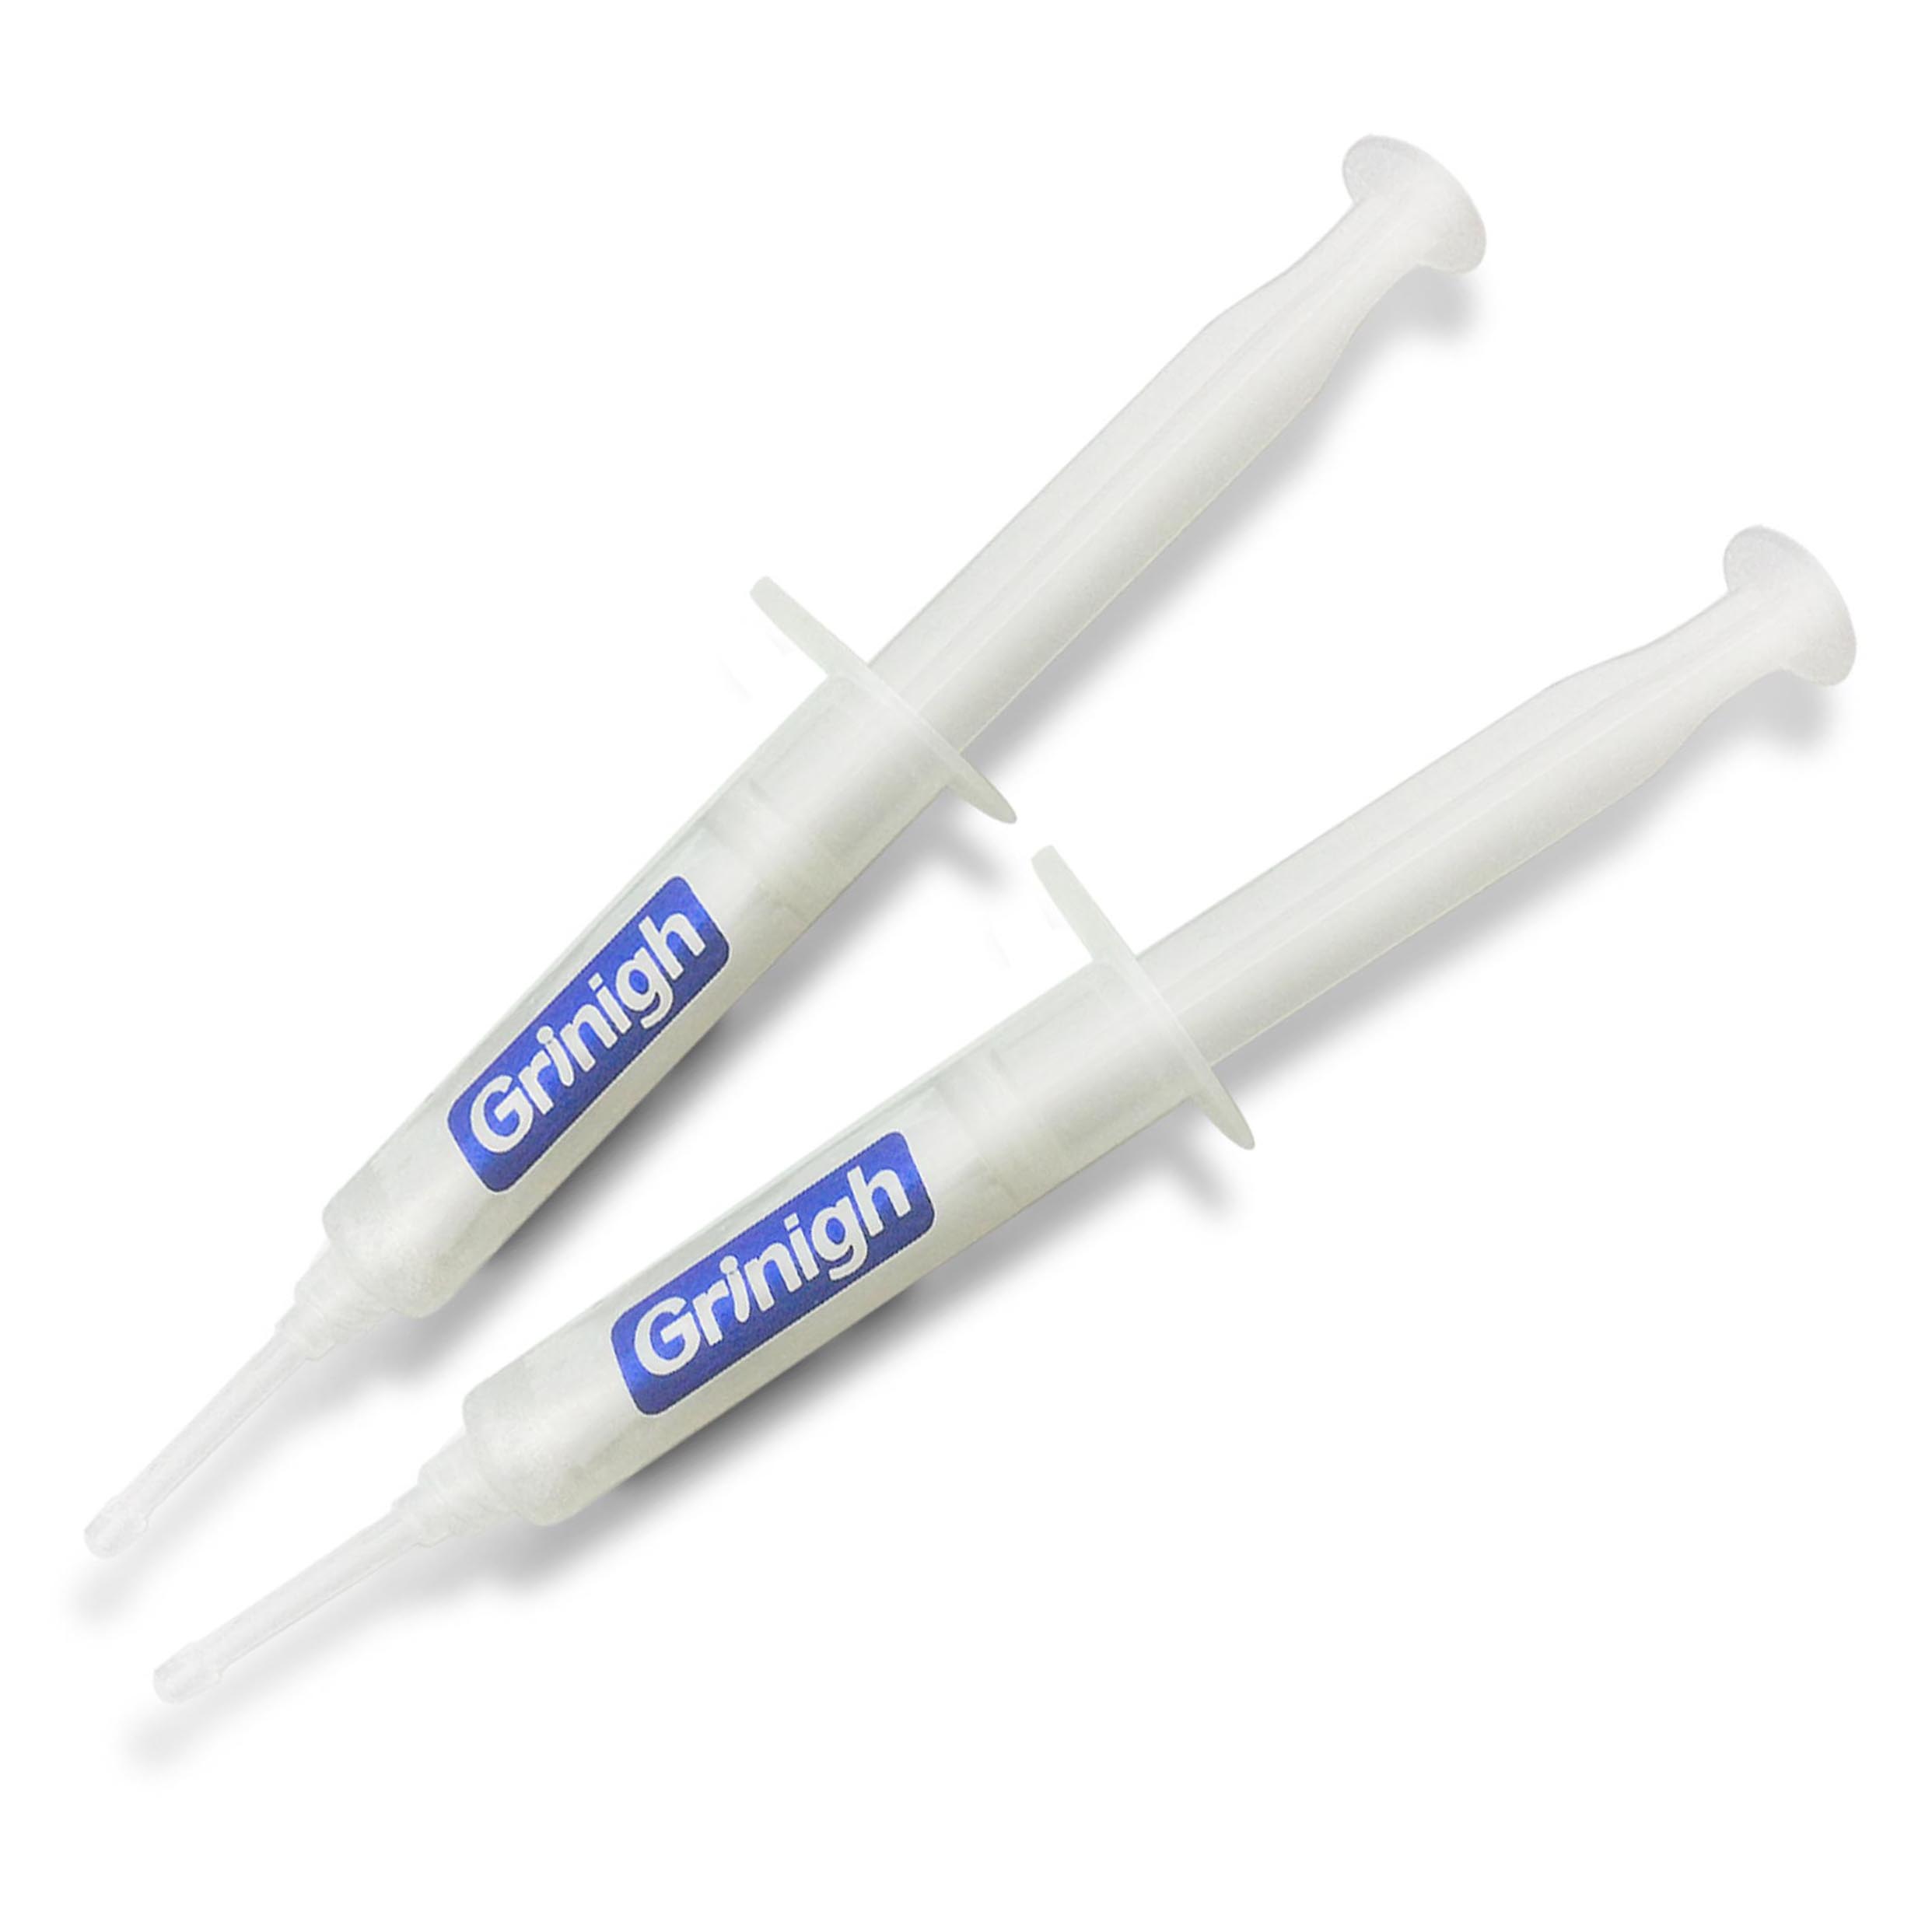 Grin365 casa Teeth Whitening sistema con morbida non-Boil Bocca vassoi - Essentials 2 Kit Person